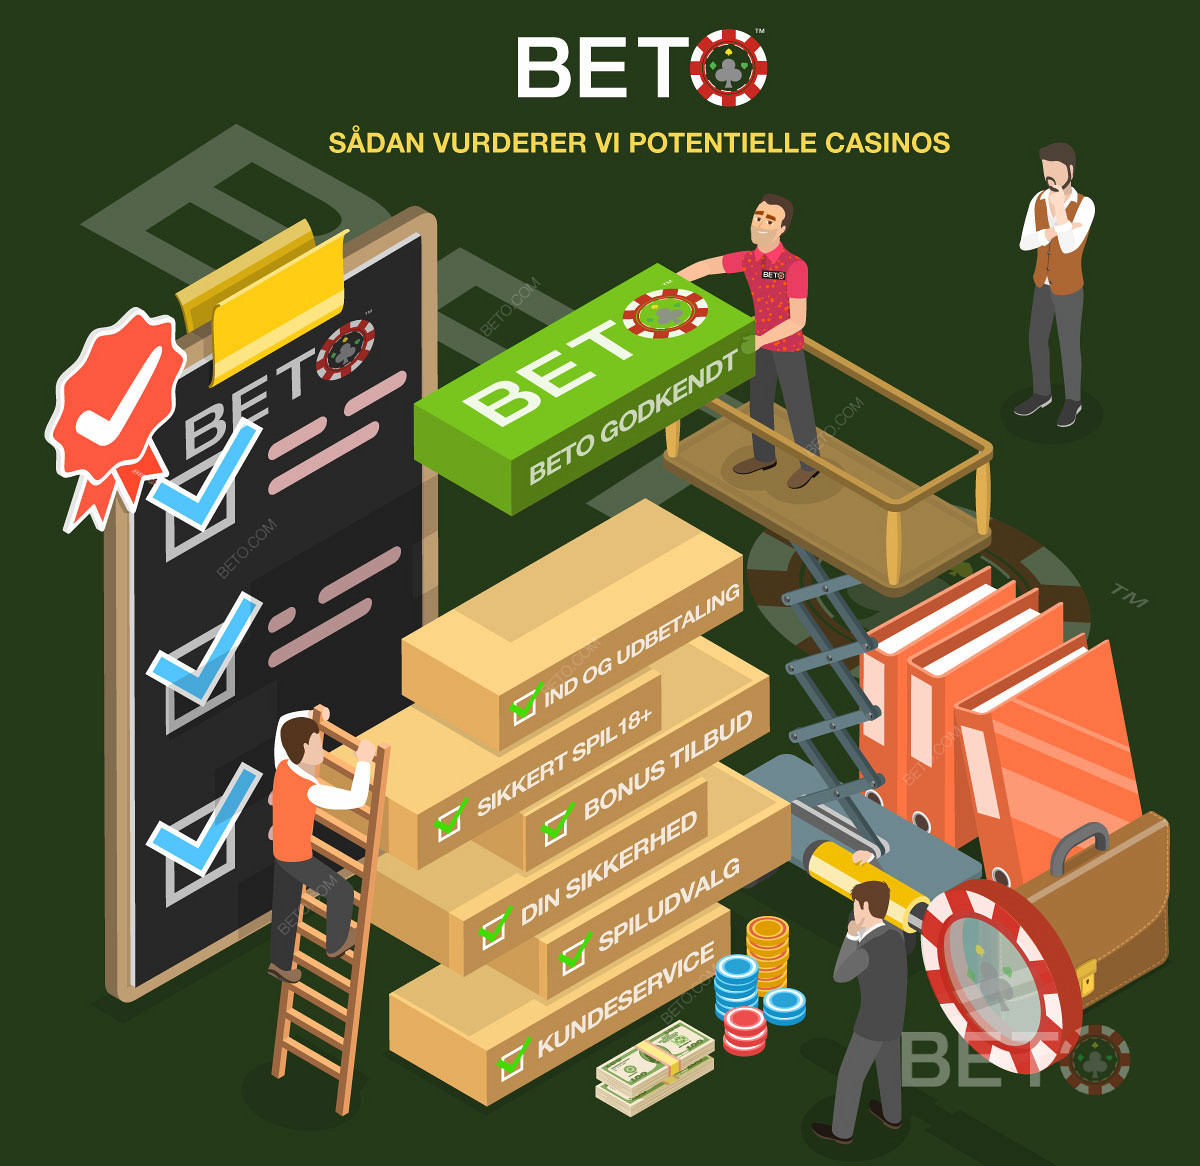 Sådan vurderer BETO potentielle Online Casinos